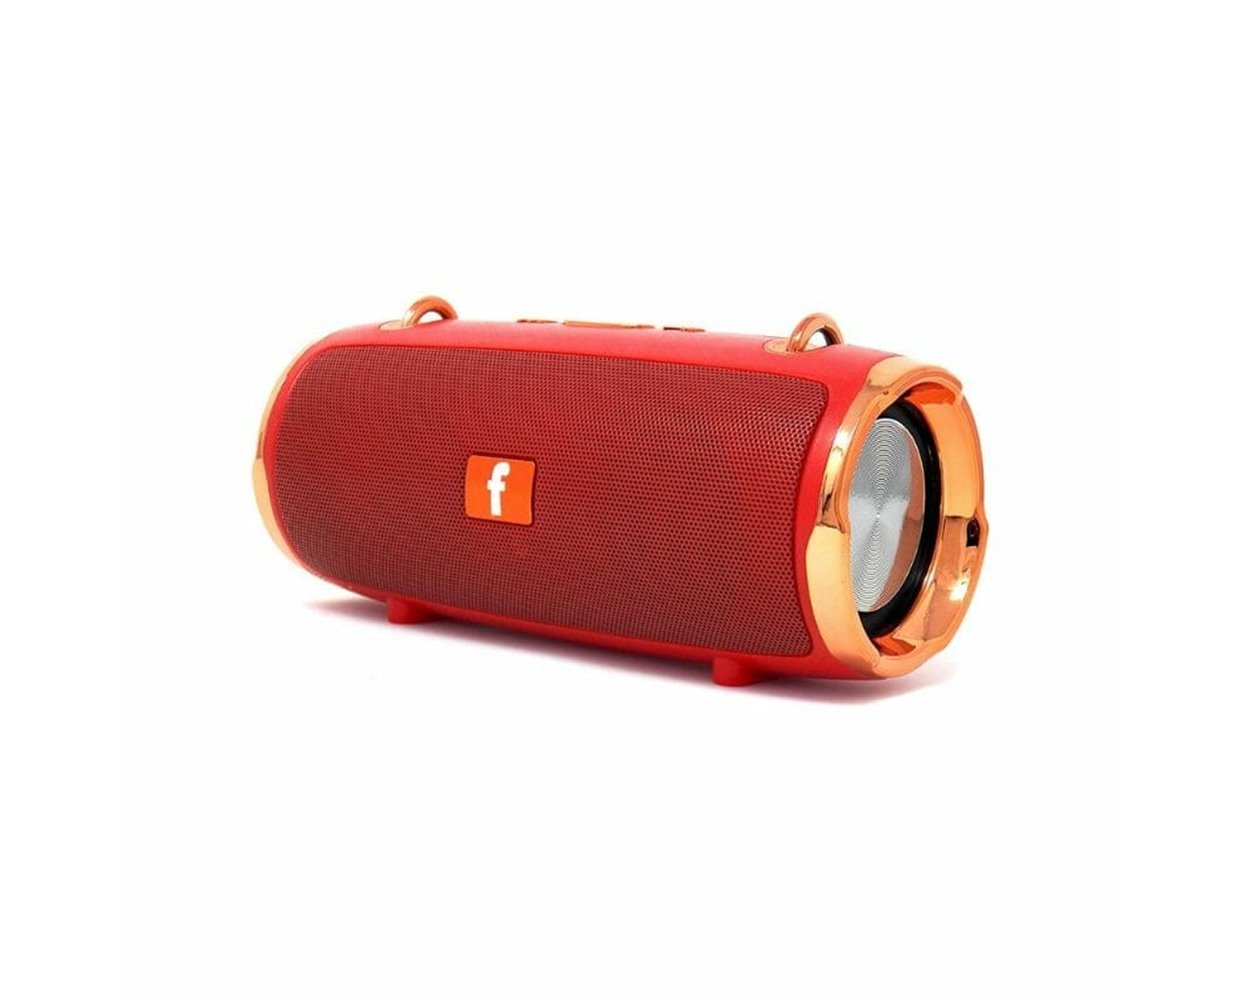 Ασύρματο ηχείο Bluetooth – KMS-Ε61 – 217337 - Red